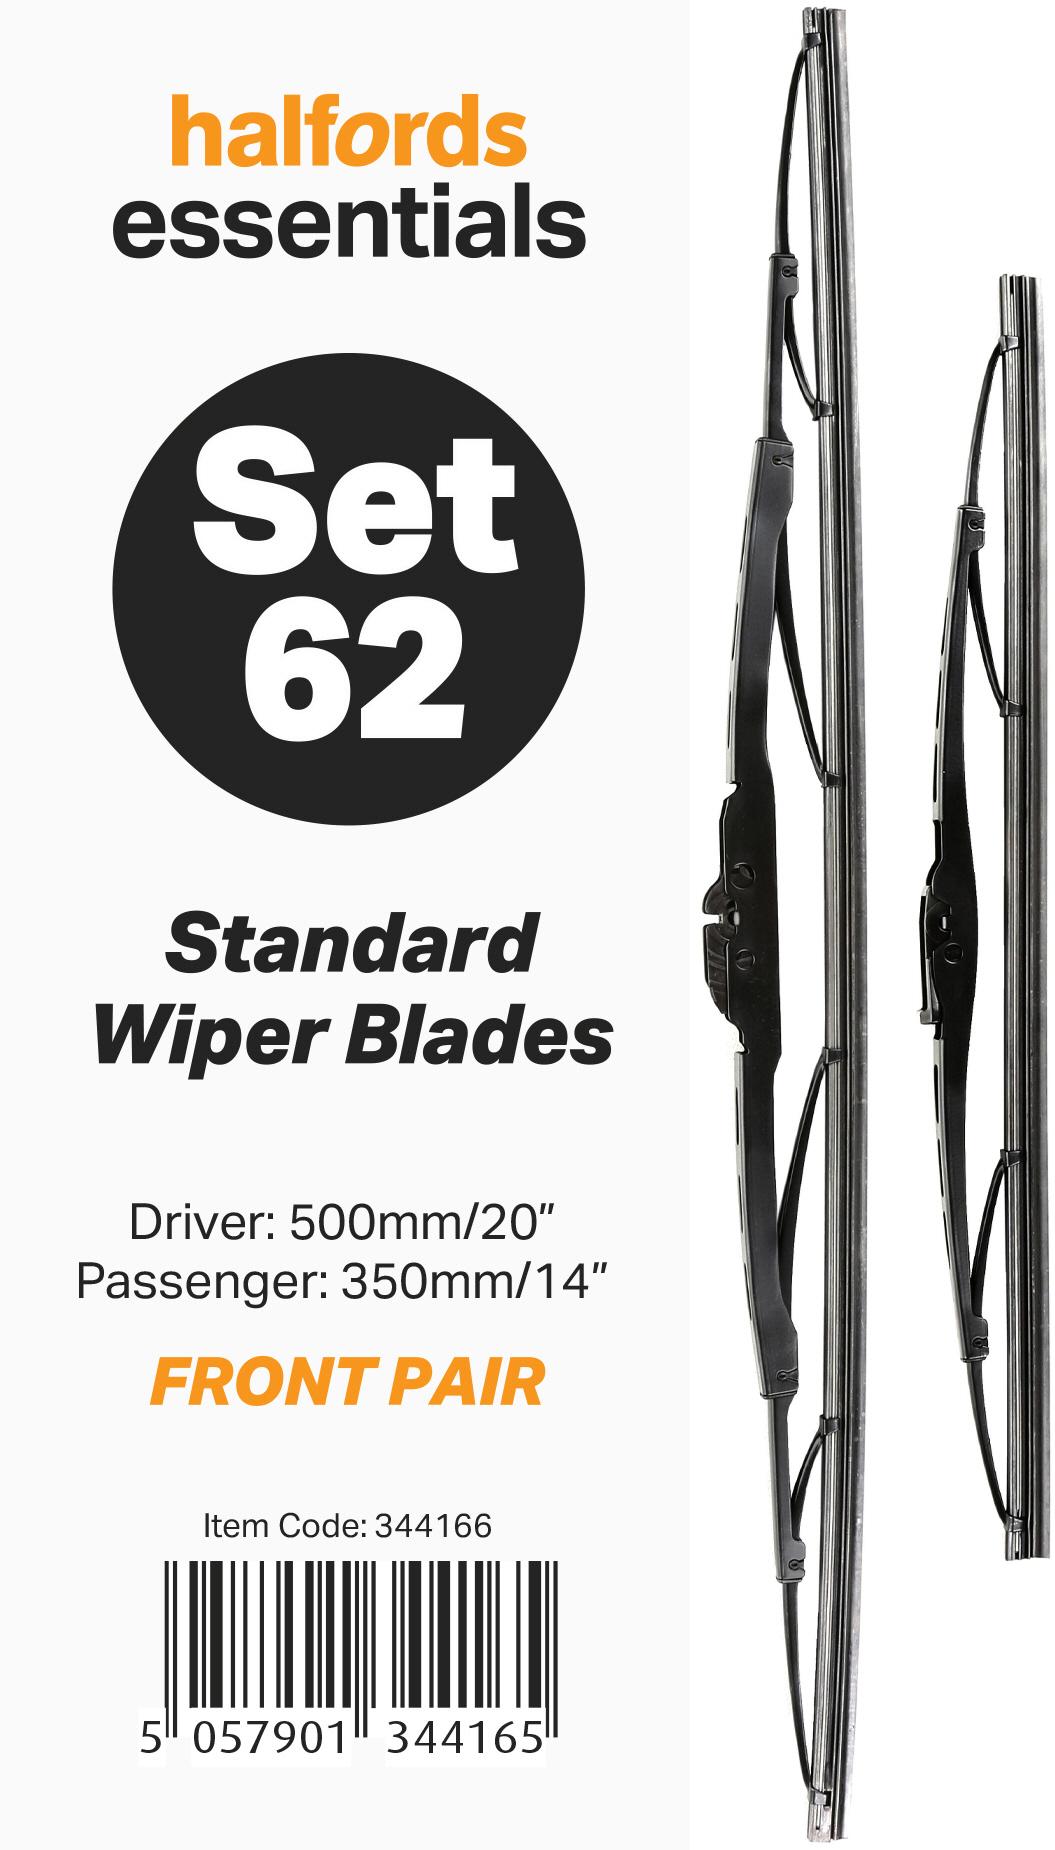 Halfords Essentials Wiper Blade Set 62